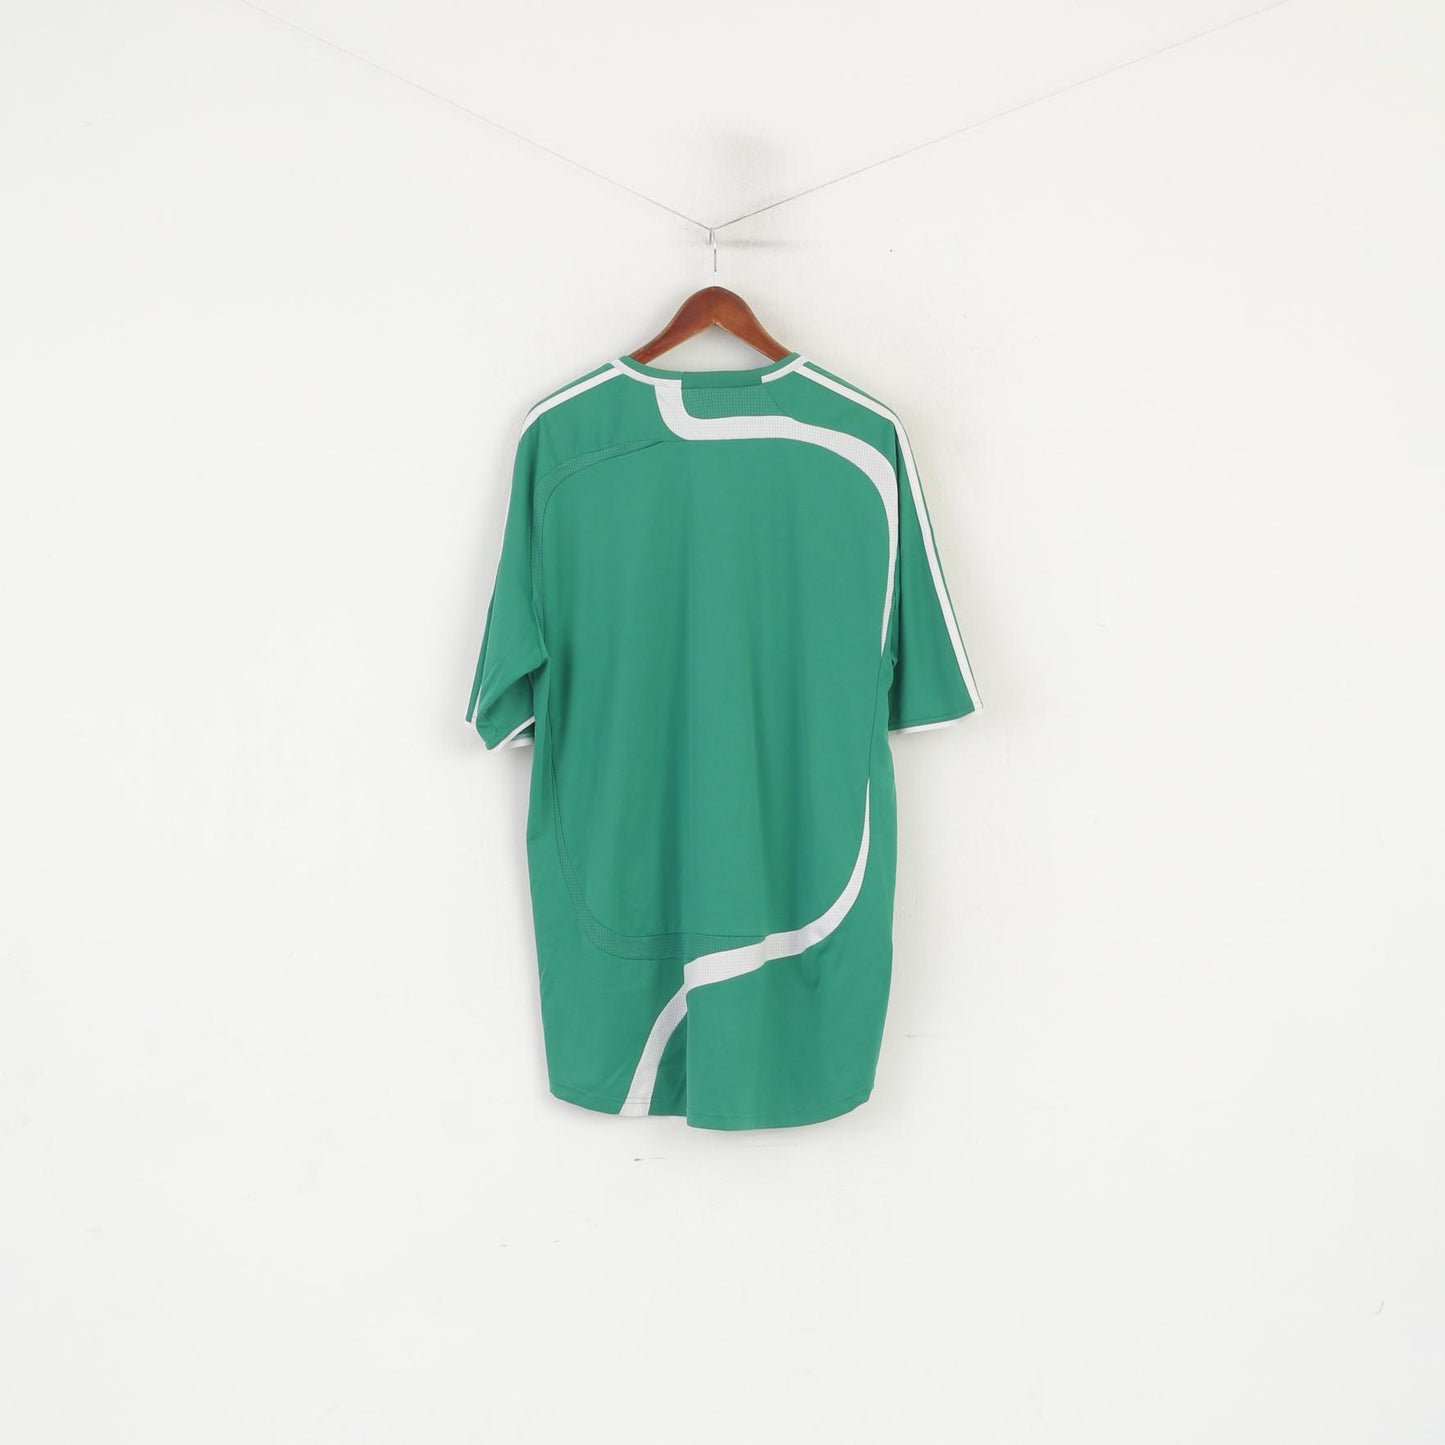 Maglia Adidas da uomo XXL verde lucido vintage sportivo in jersey top da allenamento